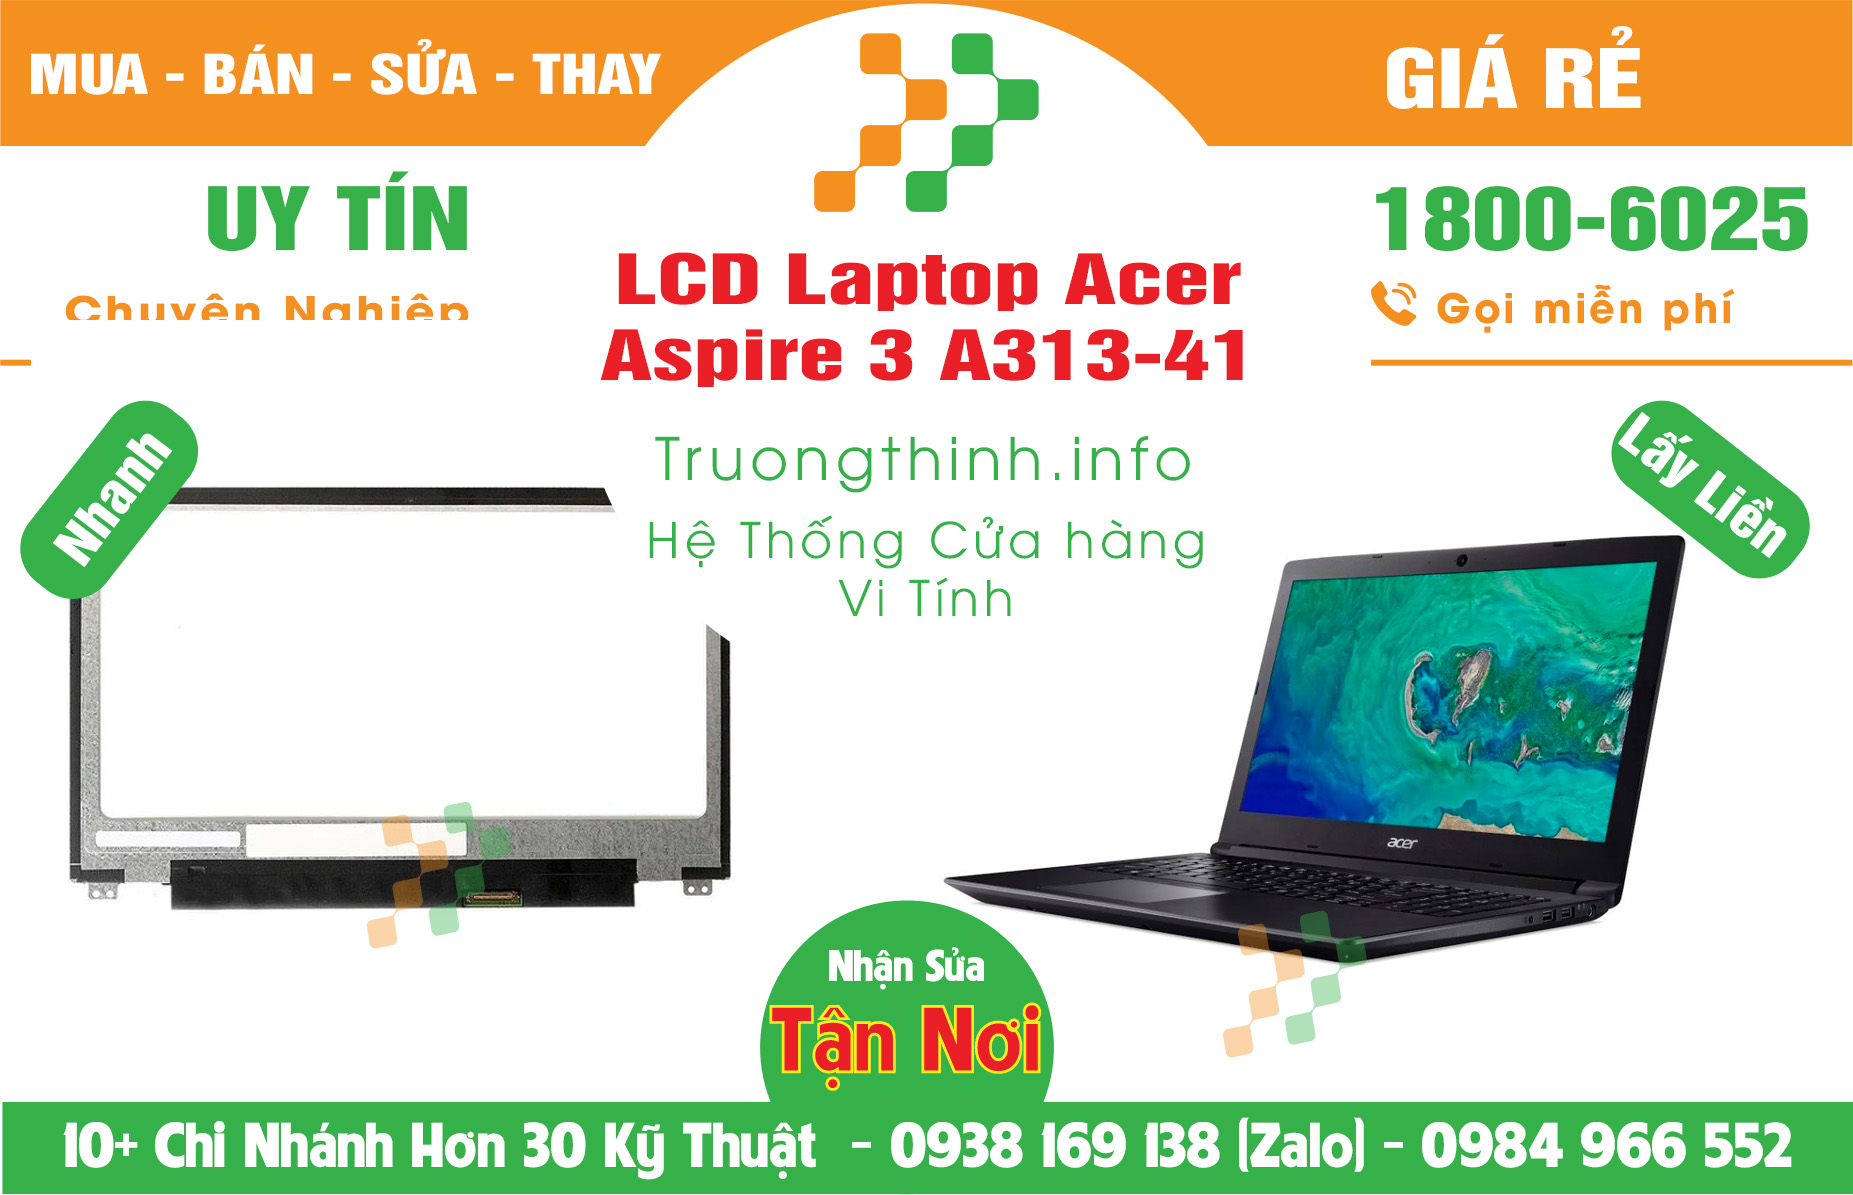 Mua Màn Hình Laptop Acer Aspire 3 A313-41 Giá Rẻ | Máy Tính Trường Thịnh Giá Rẻ